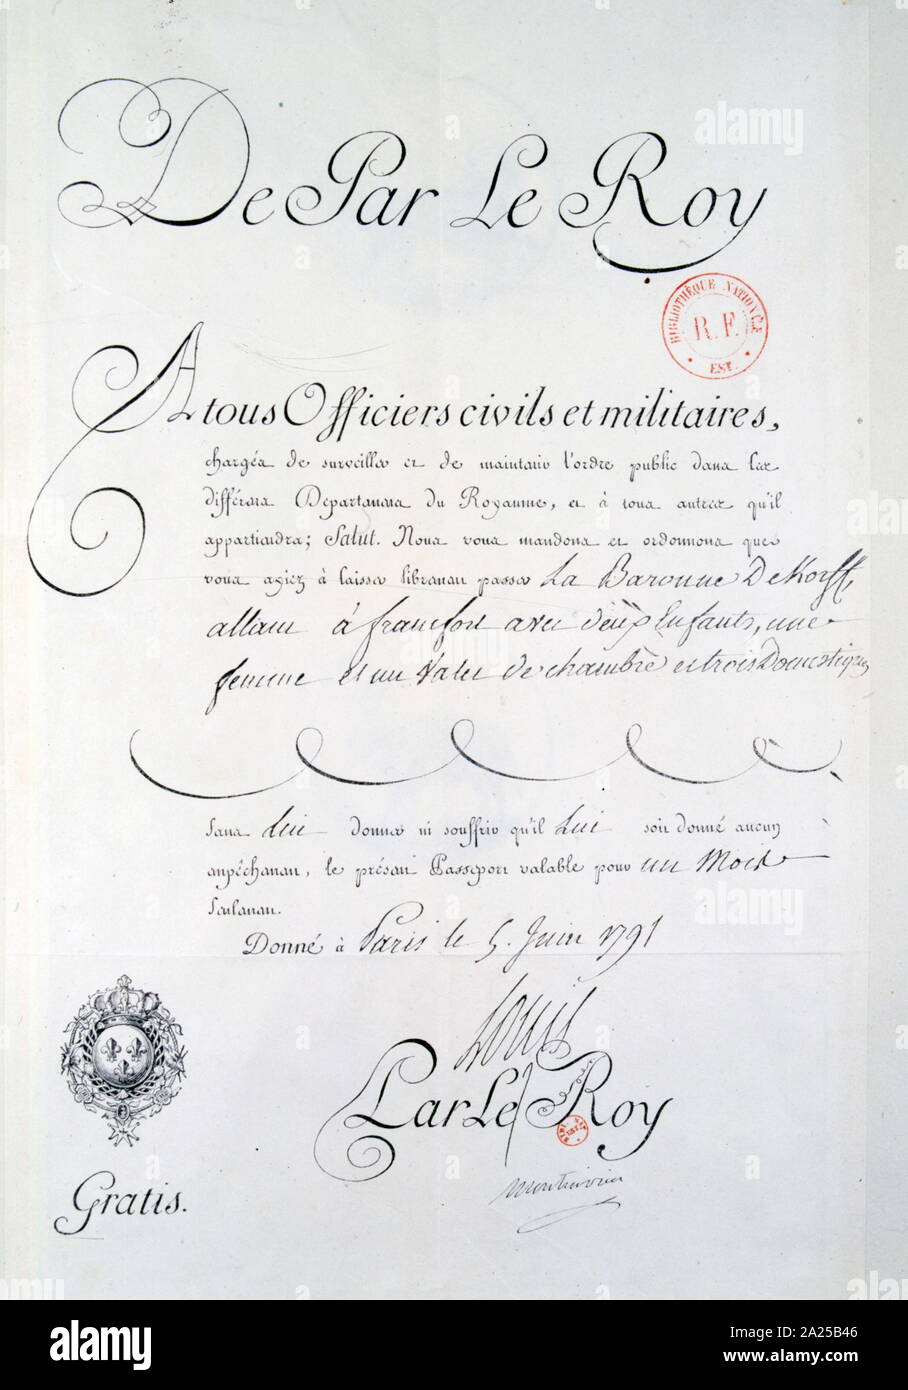 Instrucciones a los soldados para mantener el orden público durante la Revolución Francesa, firmado por el Rey Luis XVI de Francia, el 5 de junio de 1791 Foto de stock